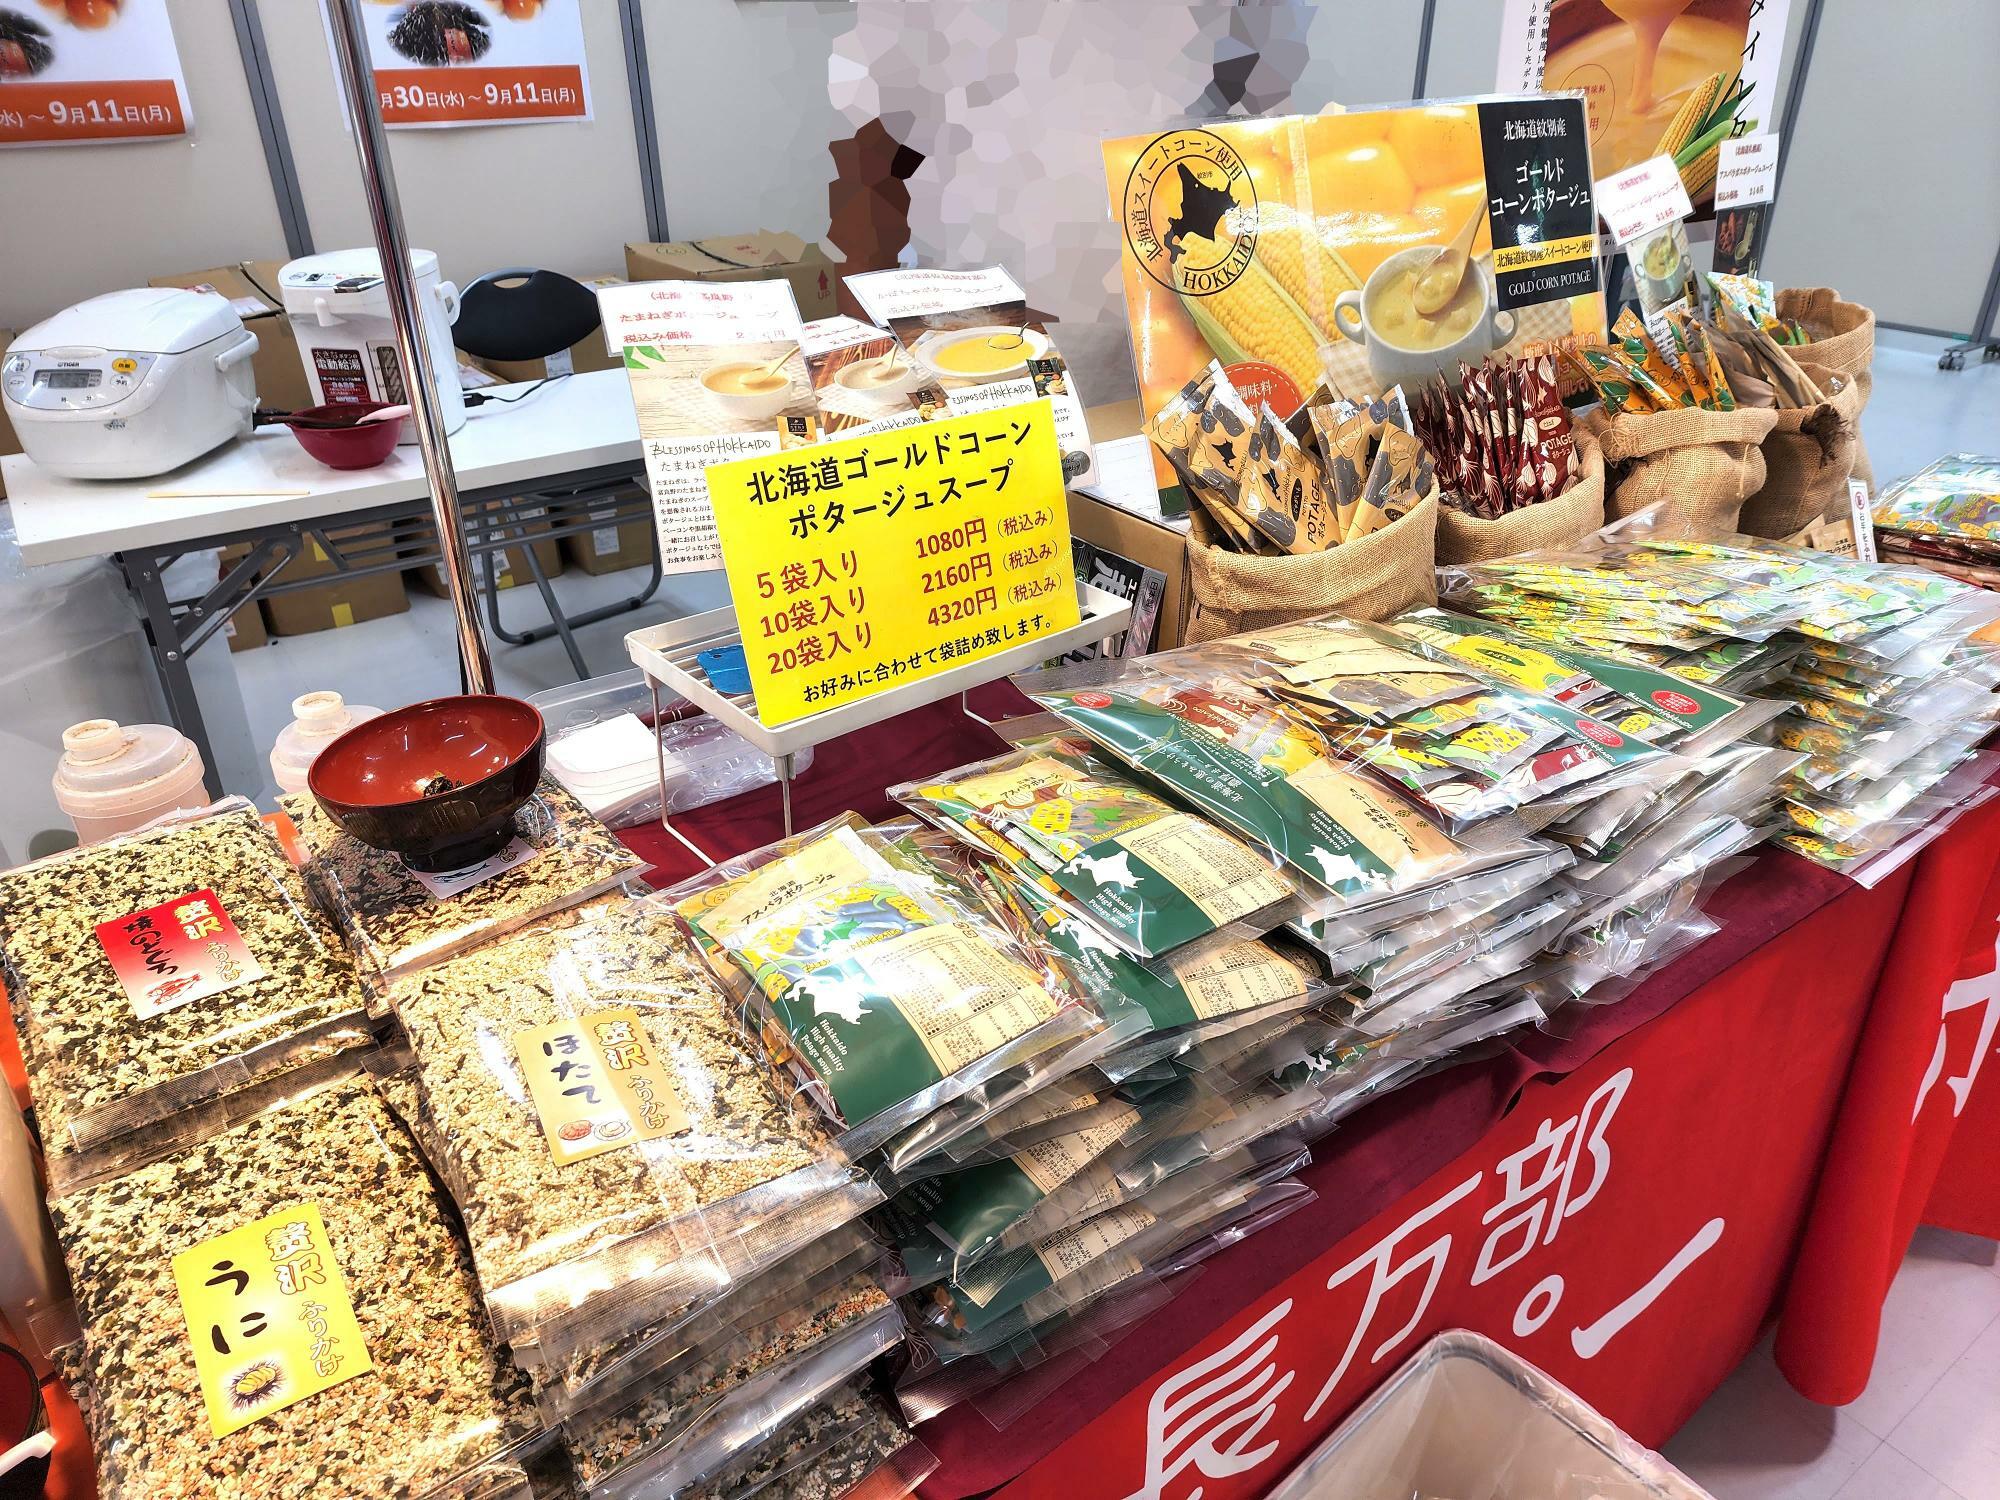 アミコで開催中の「日本の味めぐり」出店店舗「北海道・長万部 ホットペッパー」。